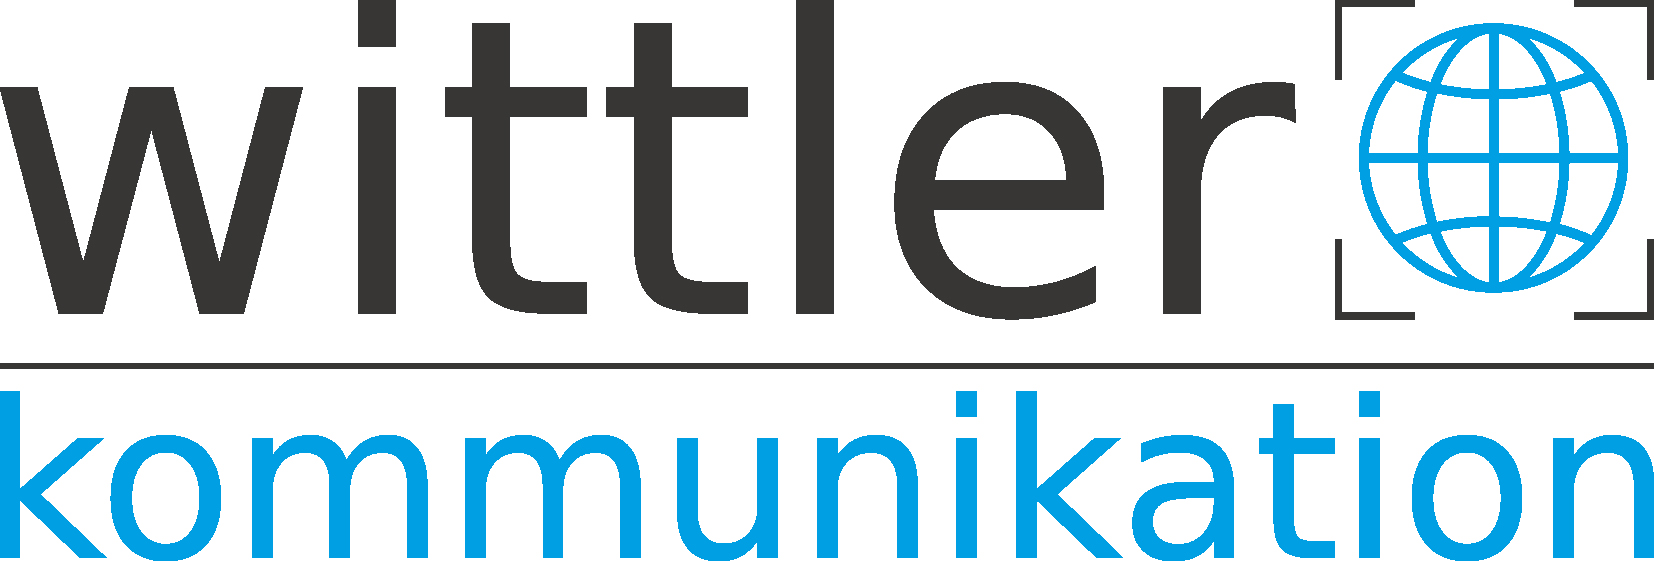 Wittler-Kommunikation Online-Marketing Marken-Strategien Marken-Aufbau